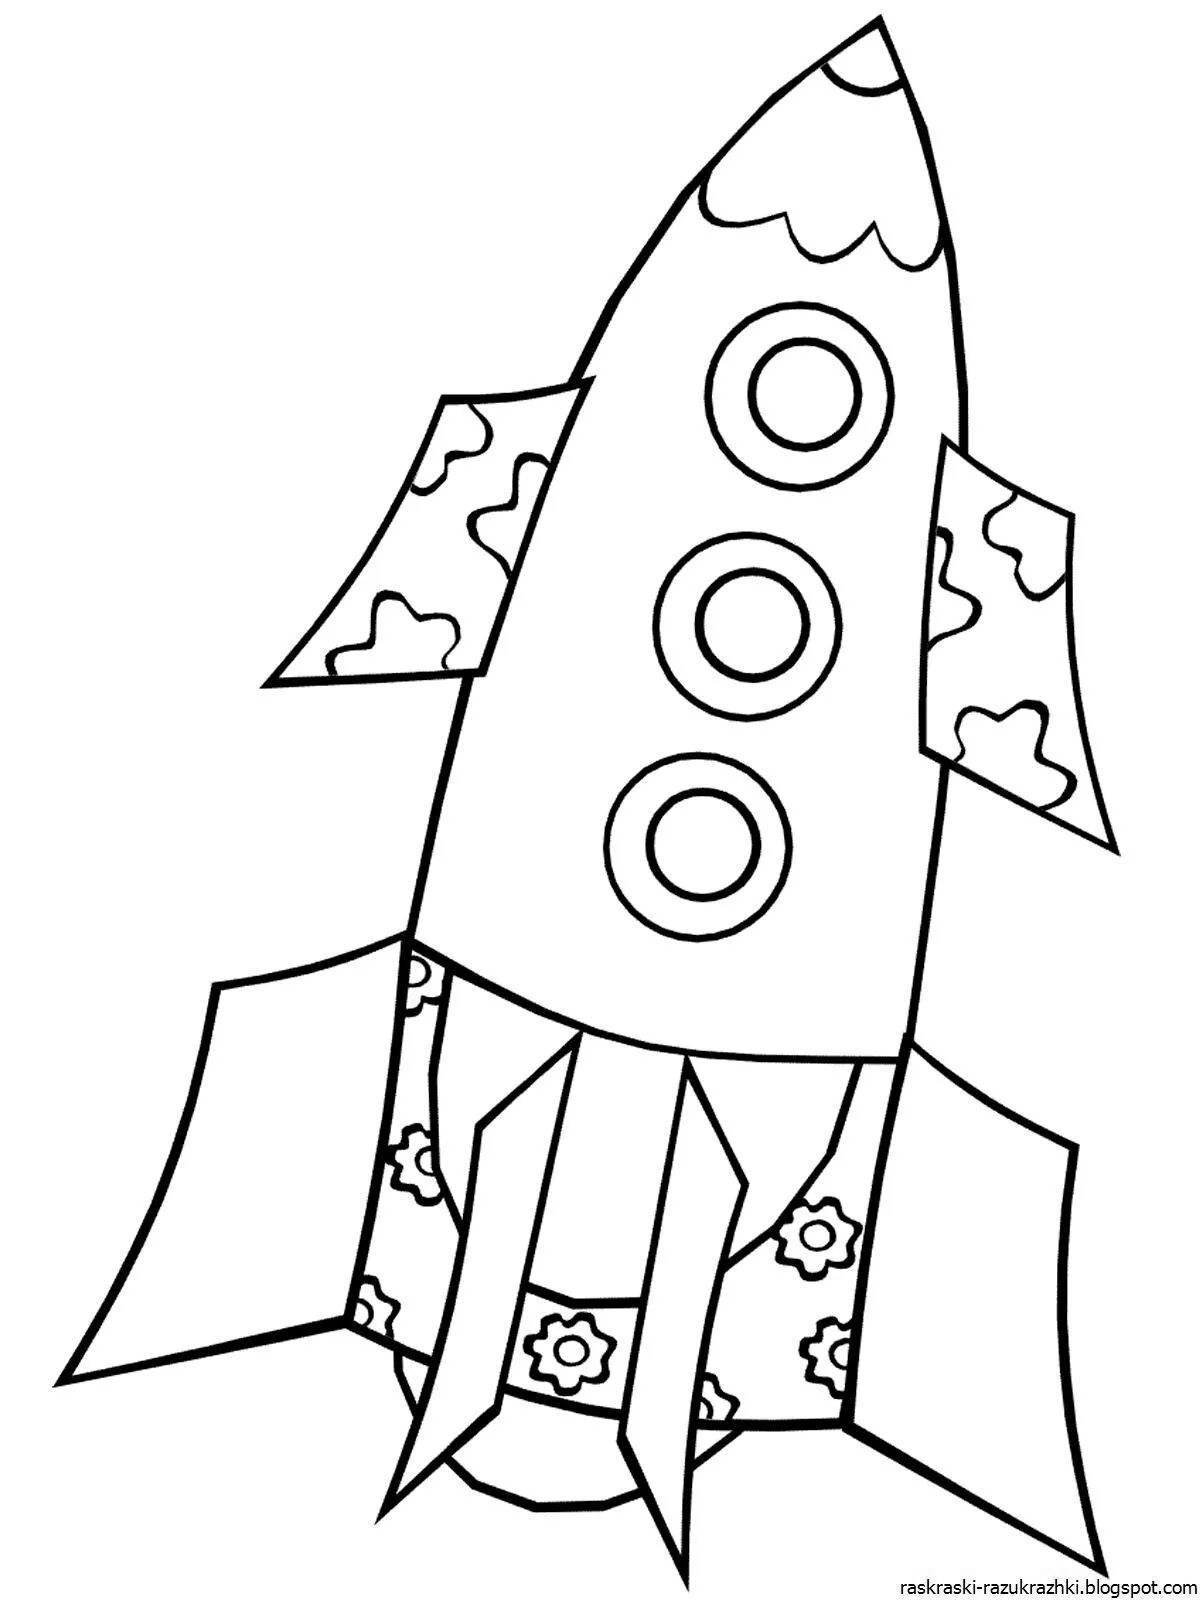 Fancy rocket pattern for kids